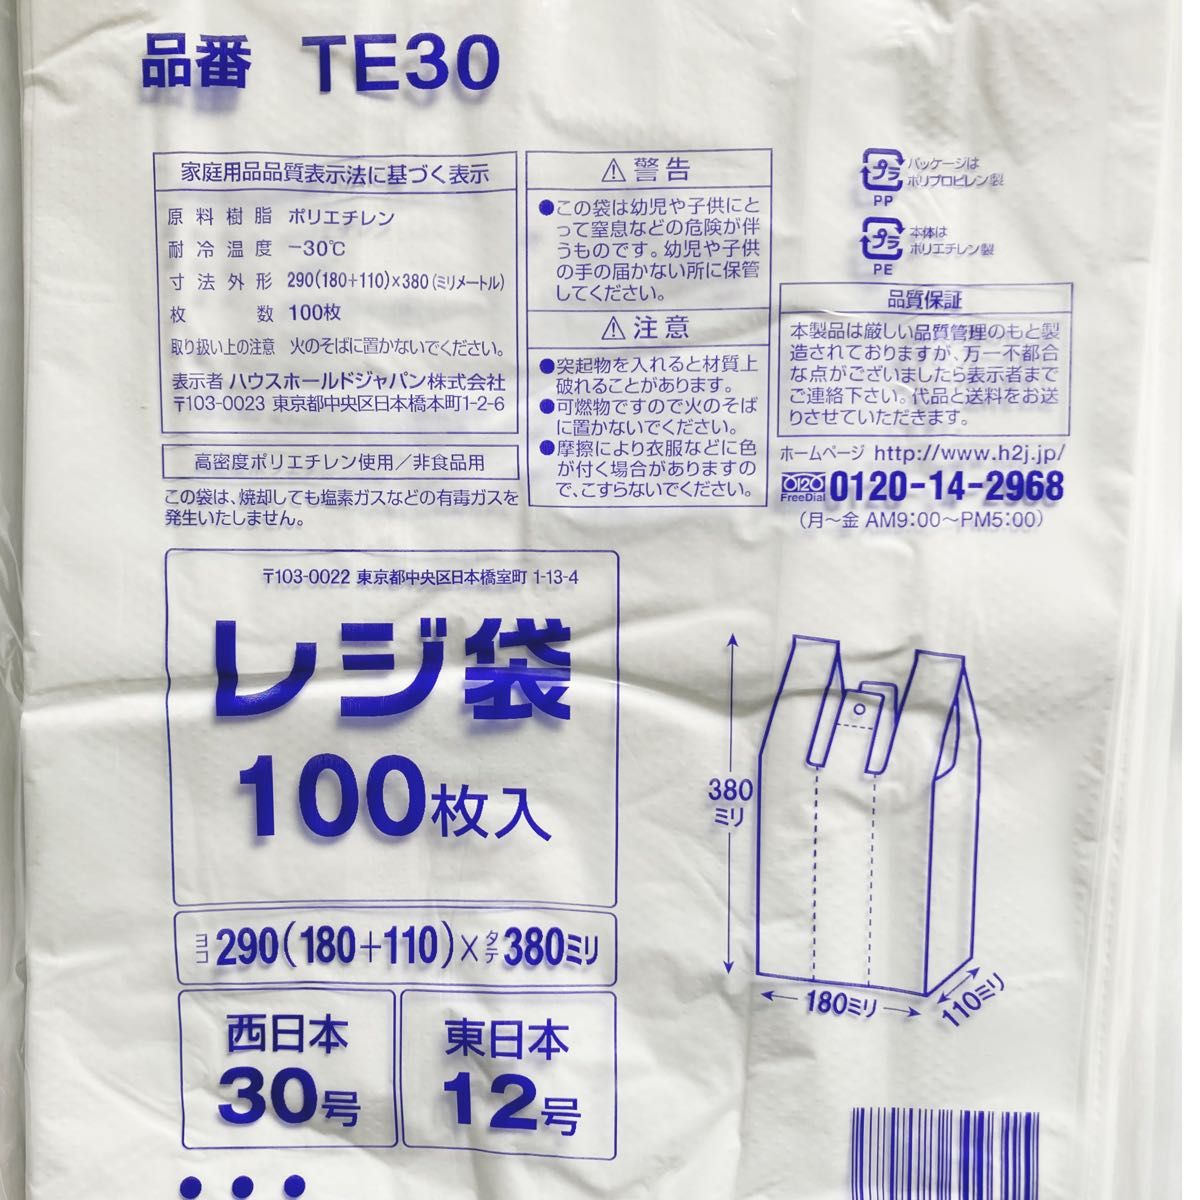 レジ袋 S 500枚 乳白色 無地 エコバッグ 手提げ袋 買い物袋 スーパーの袋 ビニール袋 ポリ袋 ゴミ袋 TE30